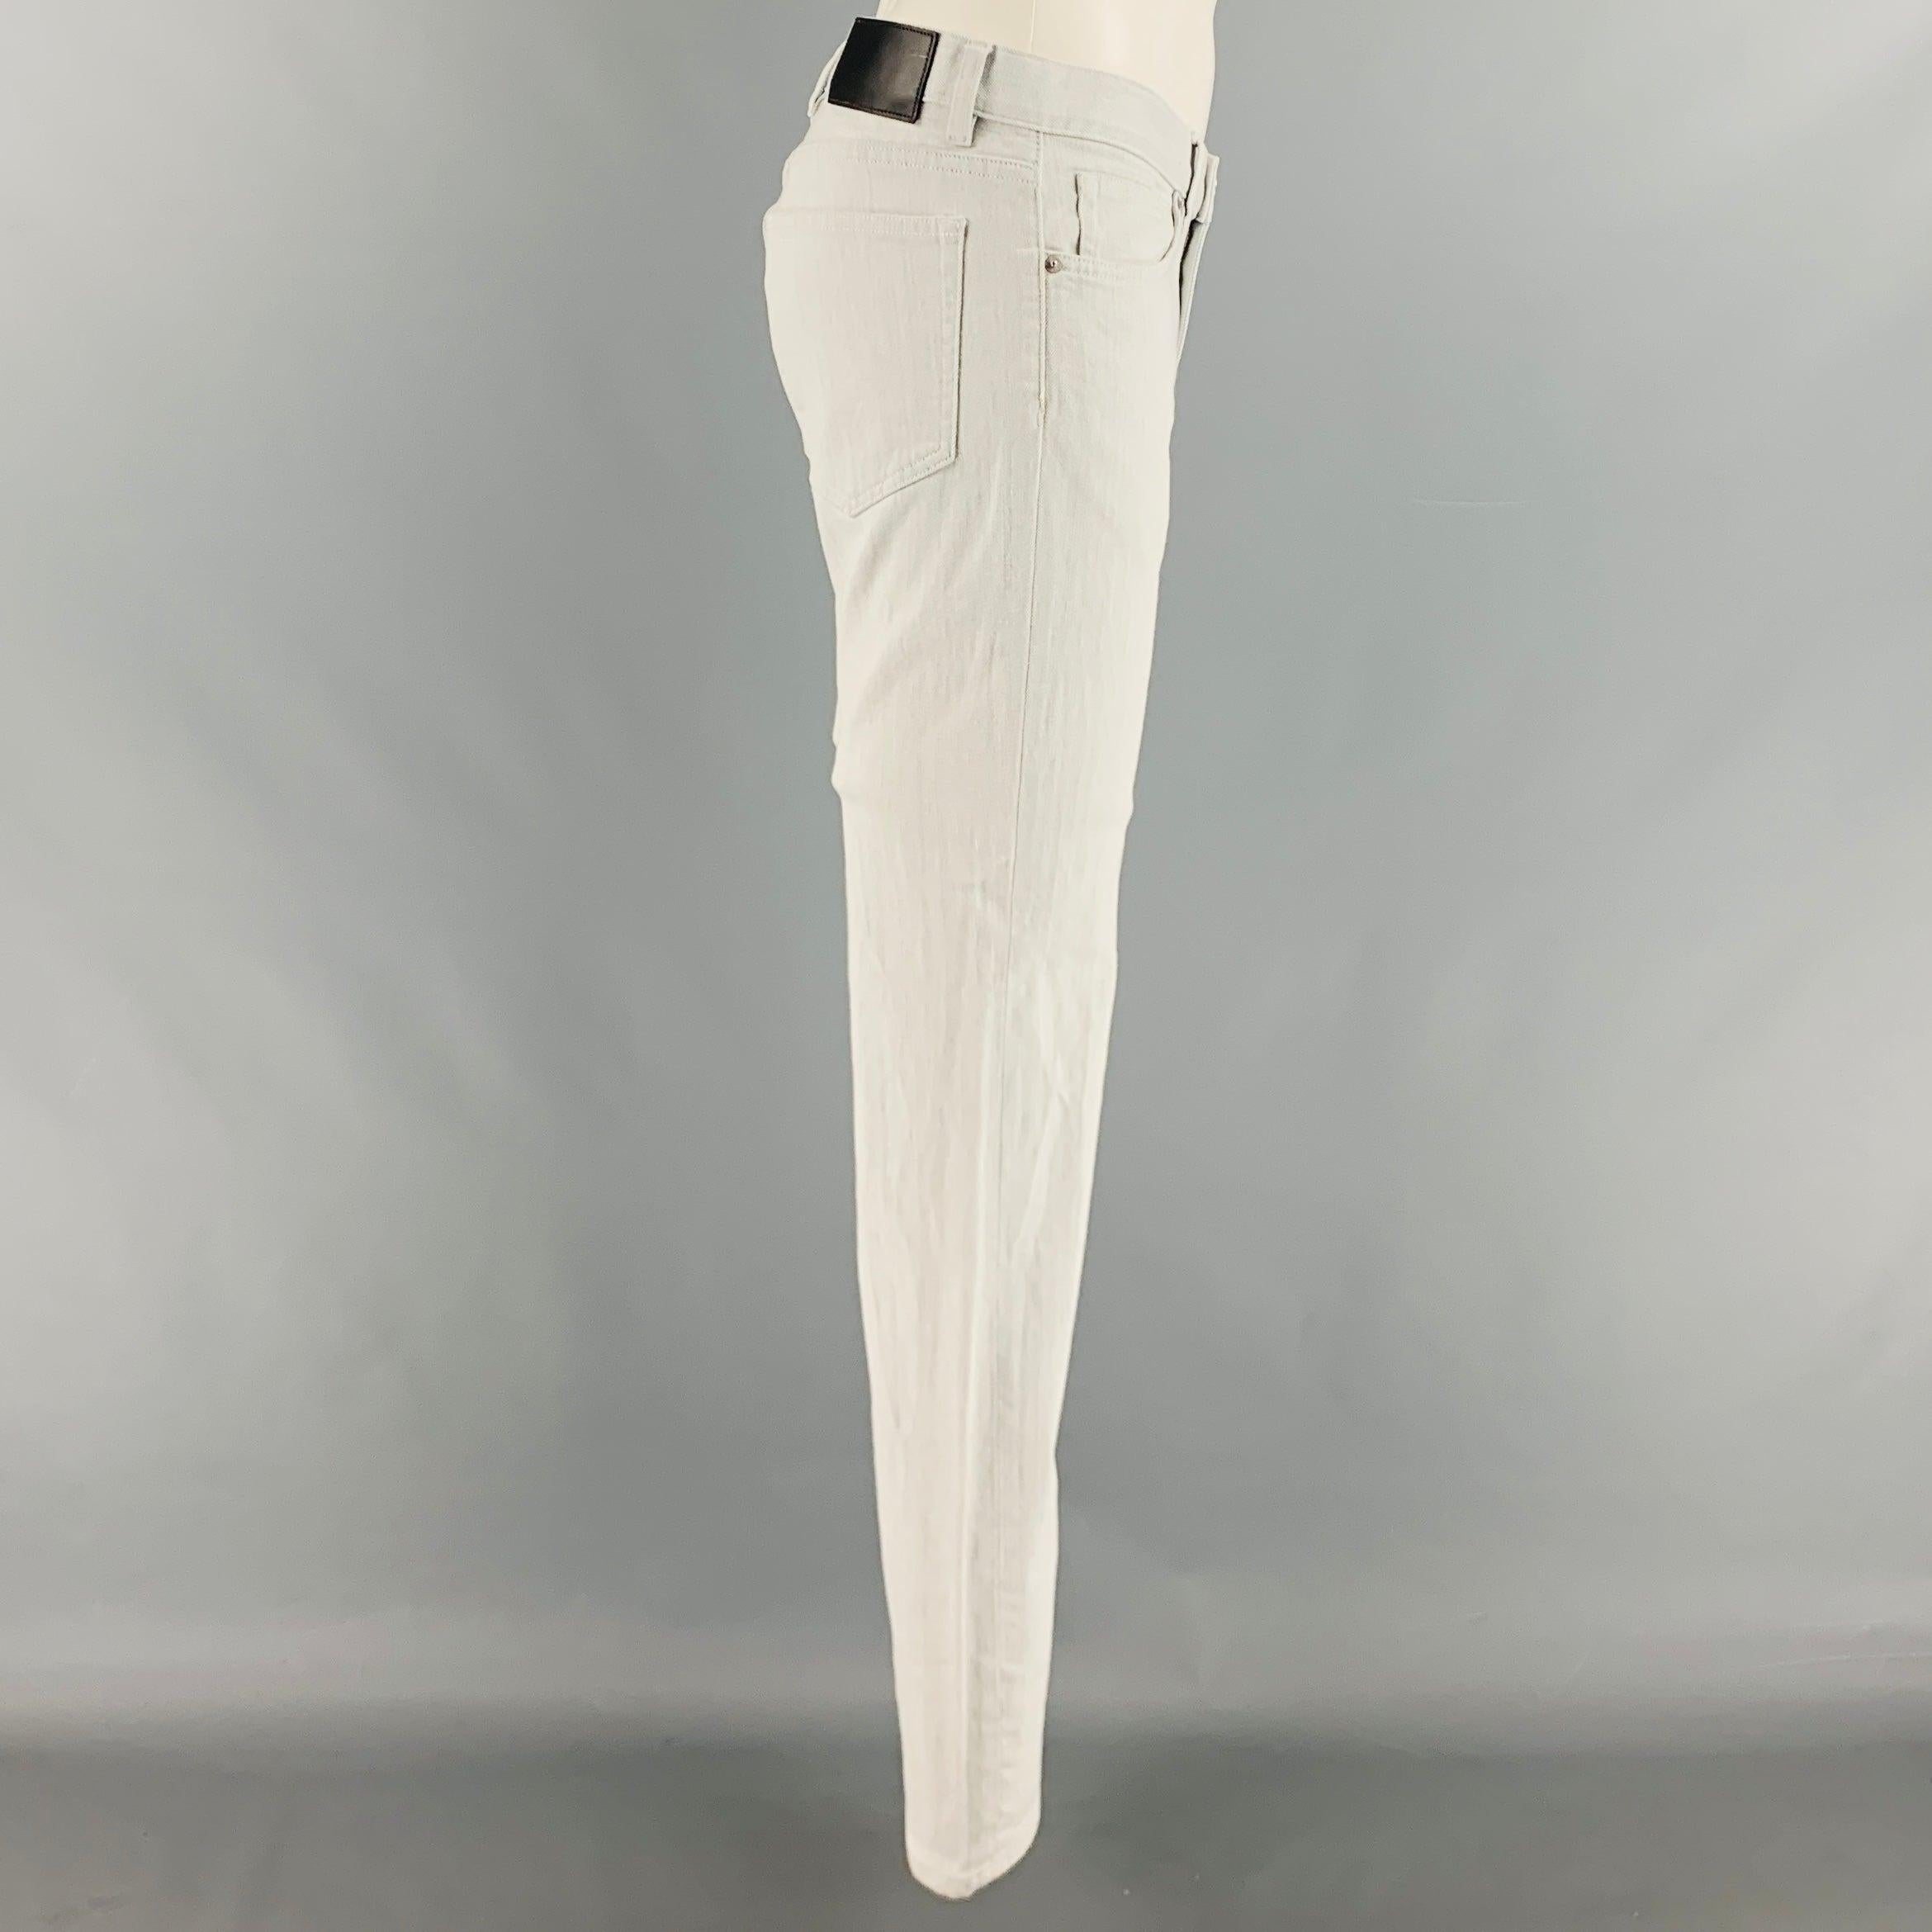 Le pantalon 'Raffi' de THEORY est en coton mélangé gris et présente une coupe ajustée ainsi qu'une fermeture à glissière. Excellent état d'origine. 

Marqué :   32 

Mesures : 
  Taille : 33 pouces Taille : 9.5 pouces Entrejambe : 29 pouces